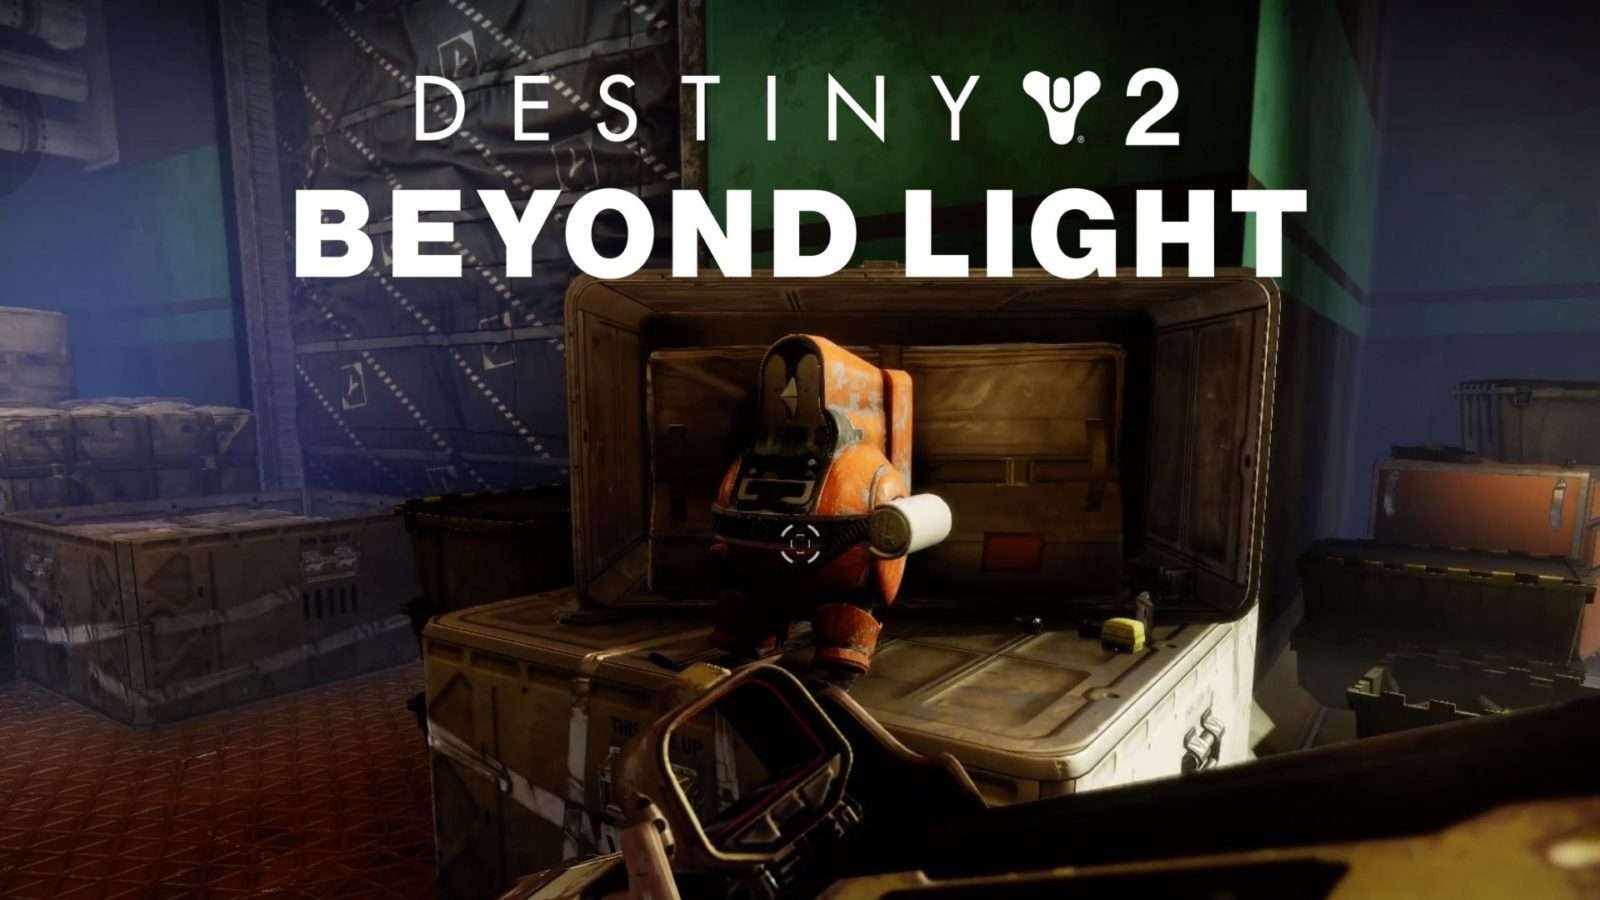 penguin in Destiny 2 beyond light